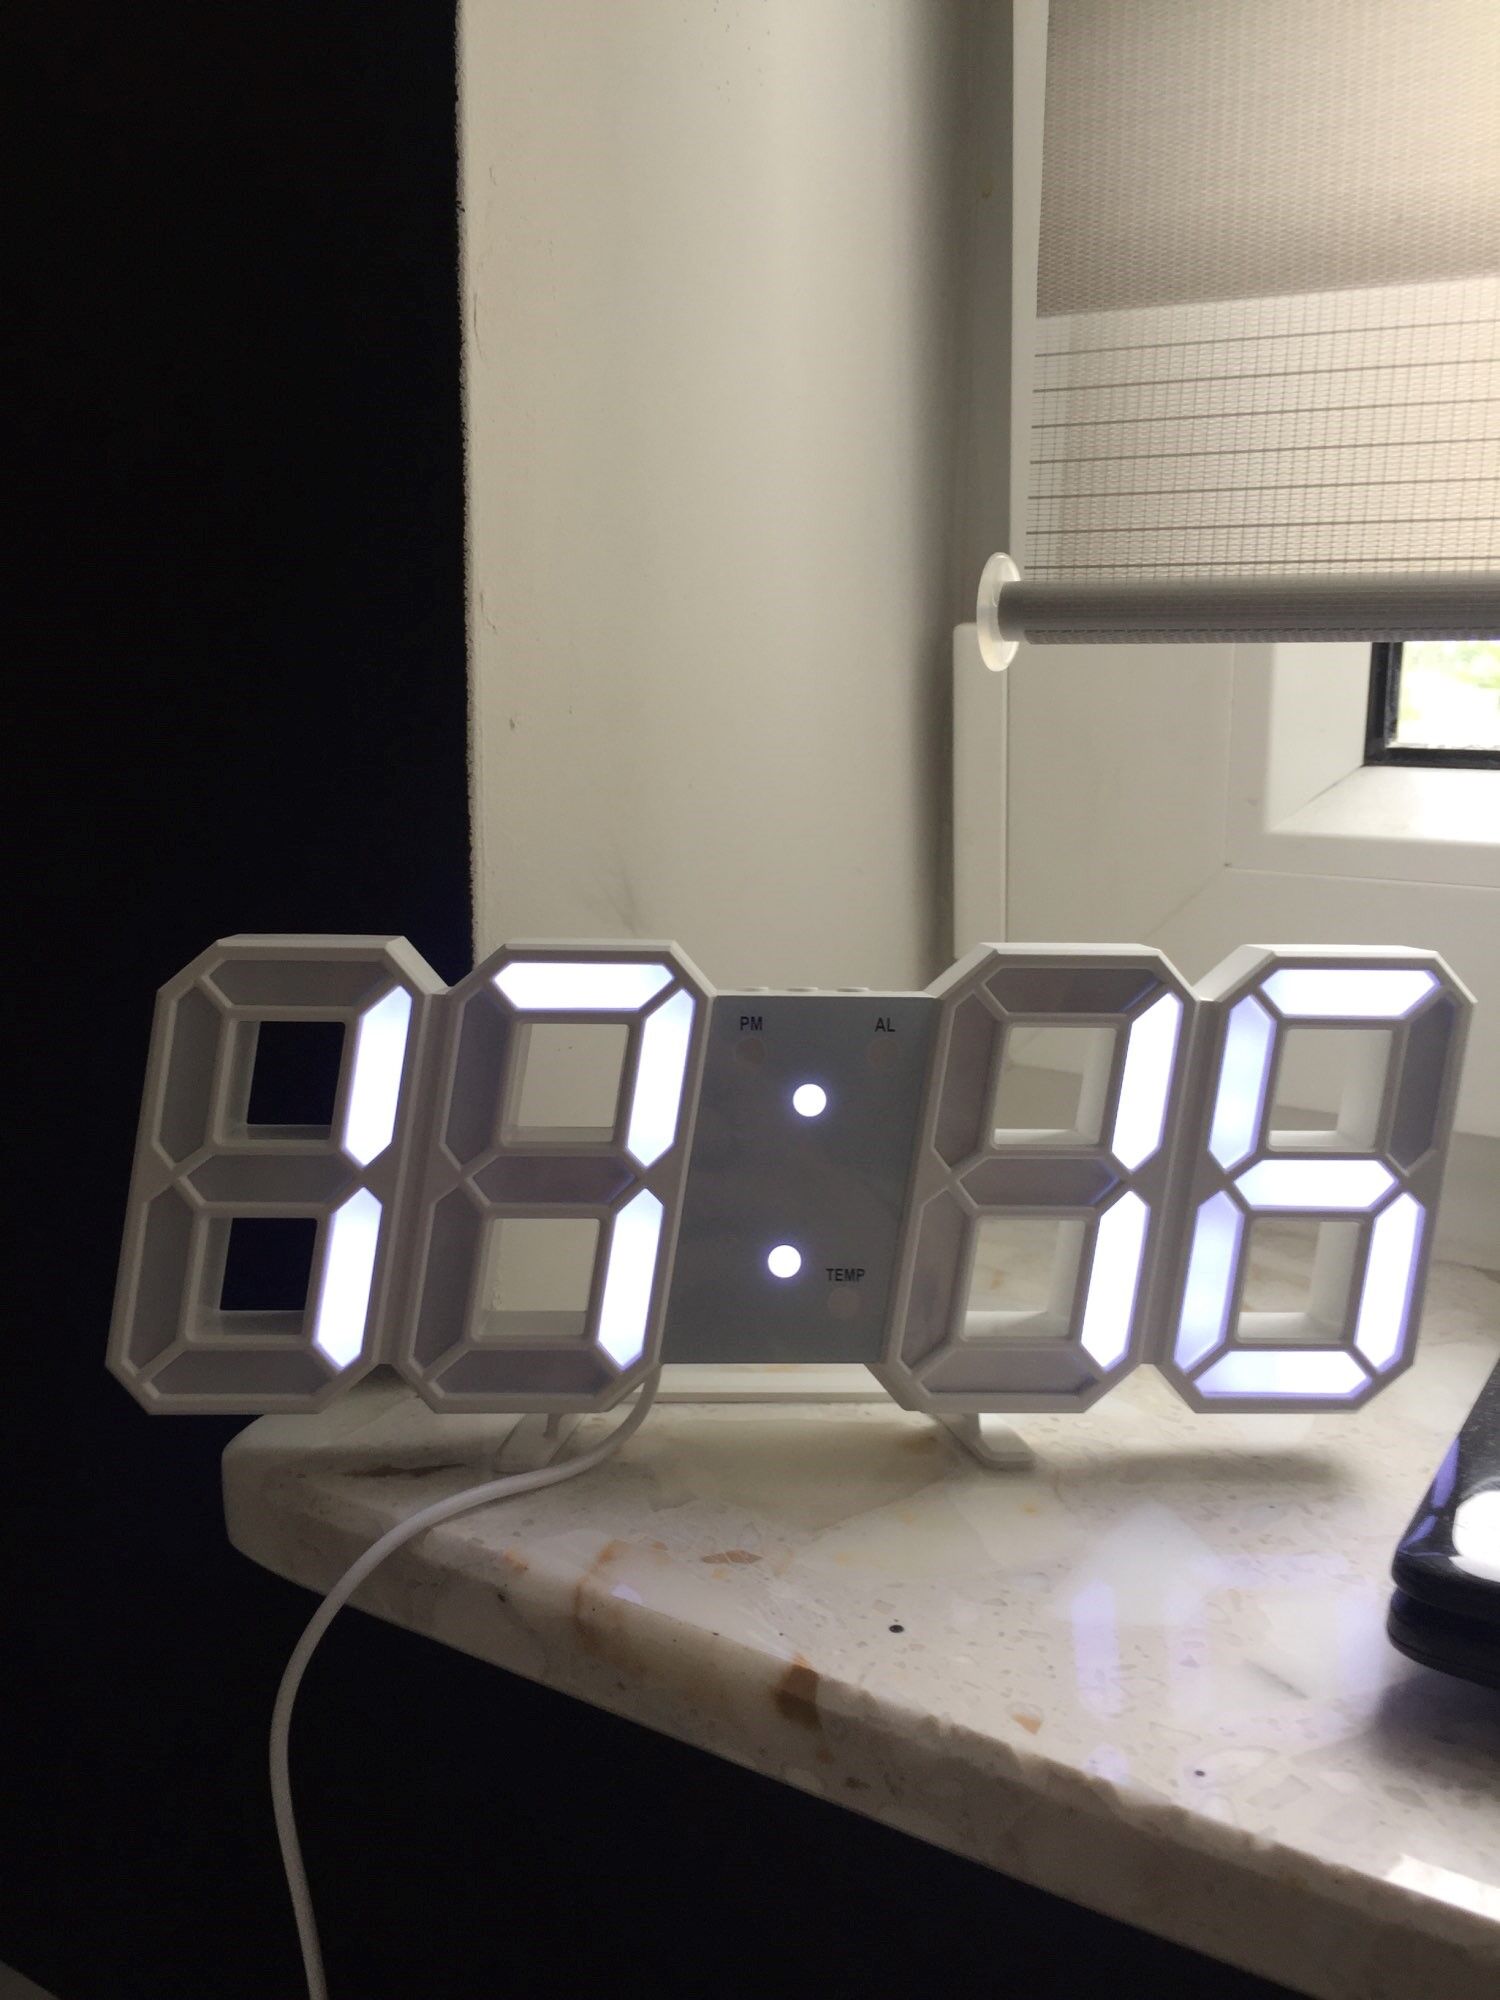 LED Digital Number Clock - Setupedia Store